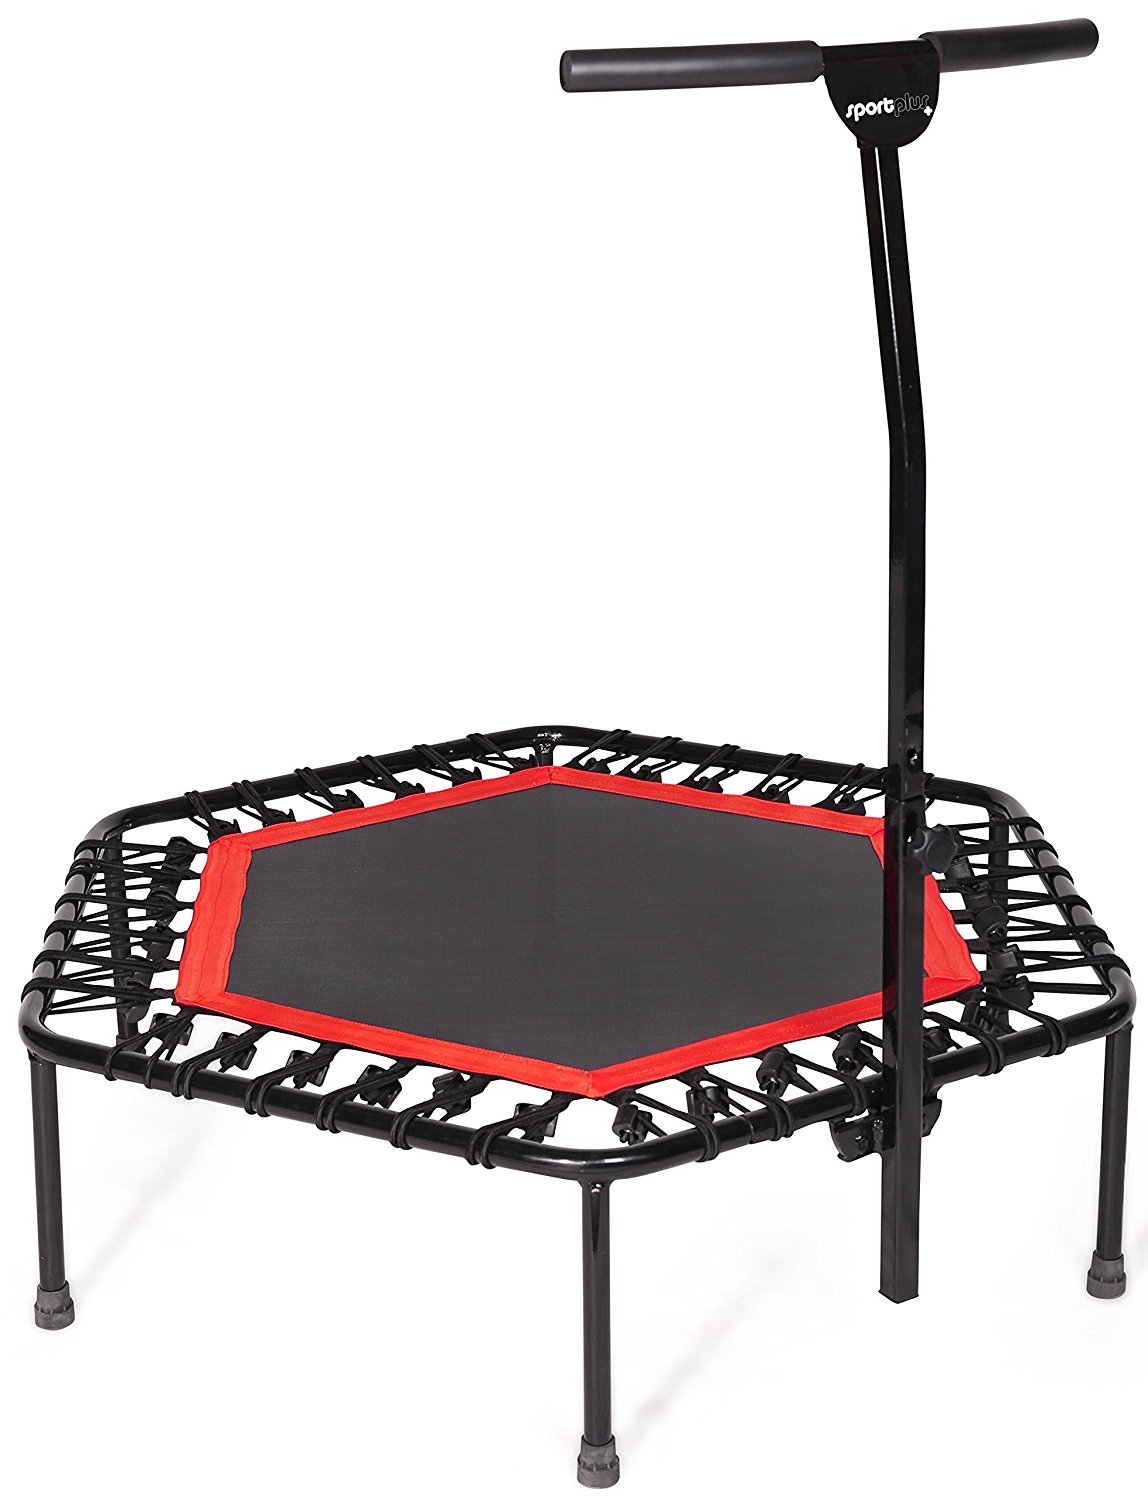 Stamm sports trampolin - Der absolute Testsieger unter allen Produkten